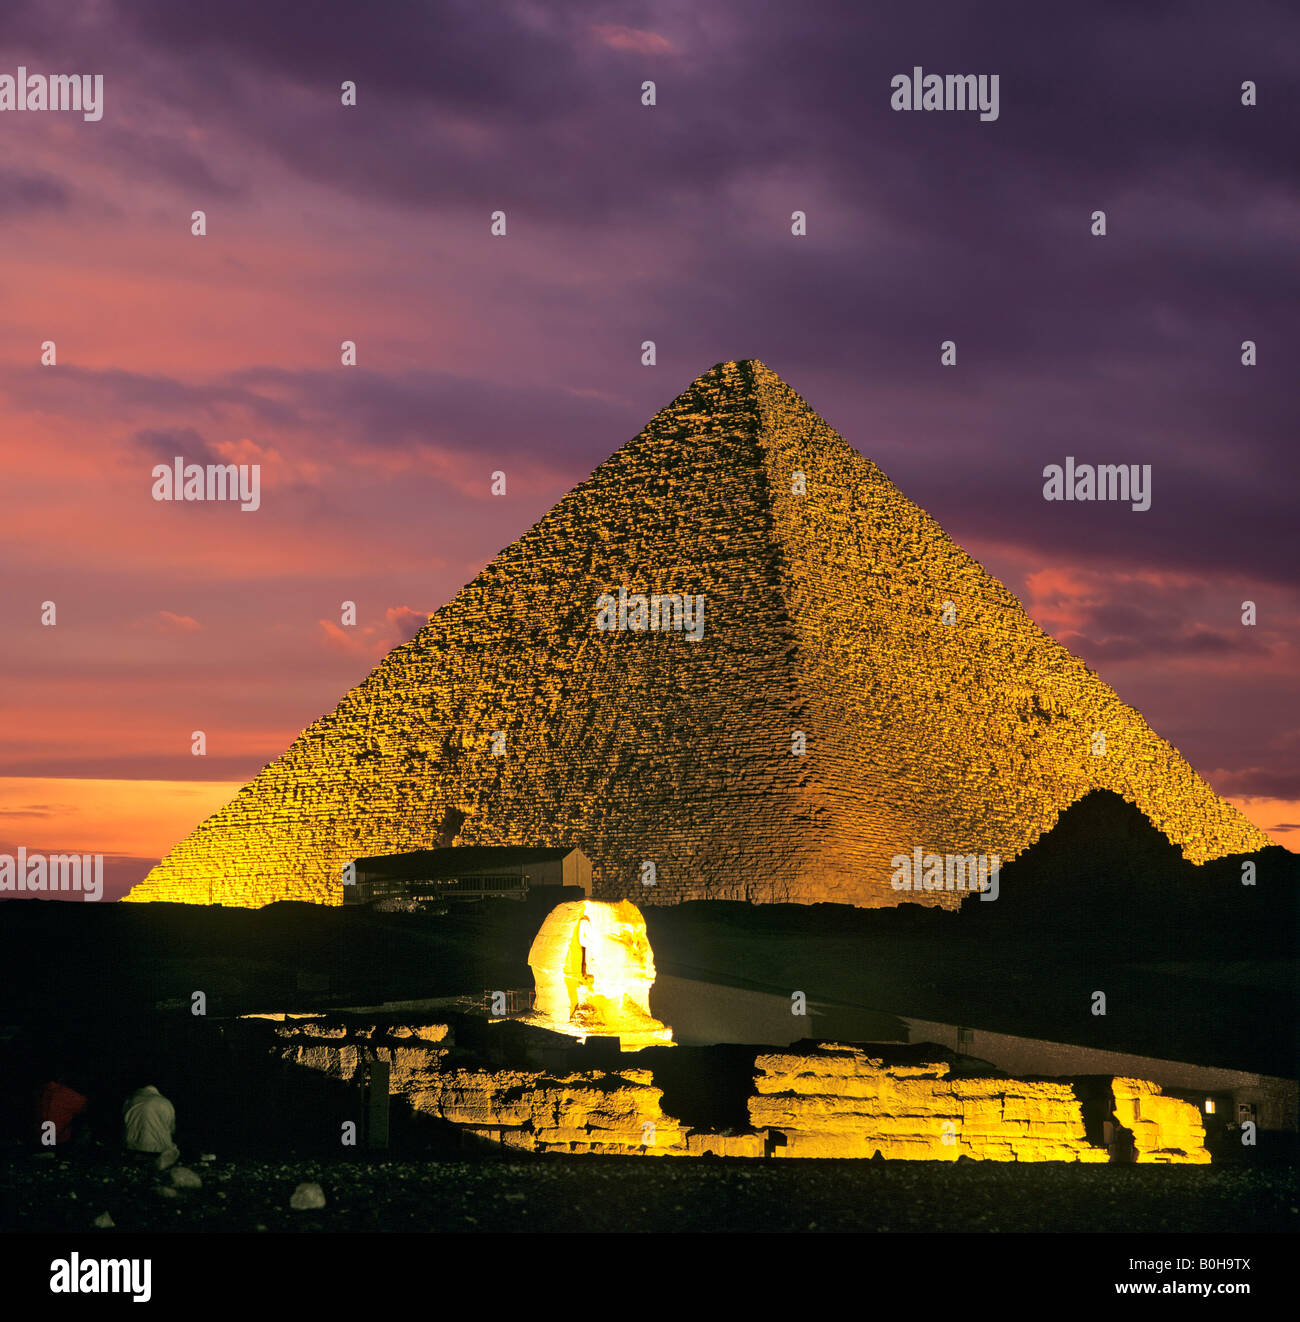 Fotomontaje de la pirámide de Giza compleja al anochecer, la Gran Pirámide de Giza, la Esfinge, El Cairo, Egipto Foto de stock